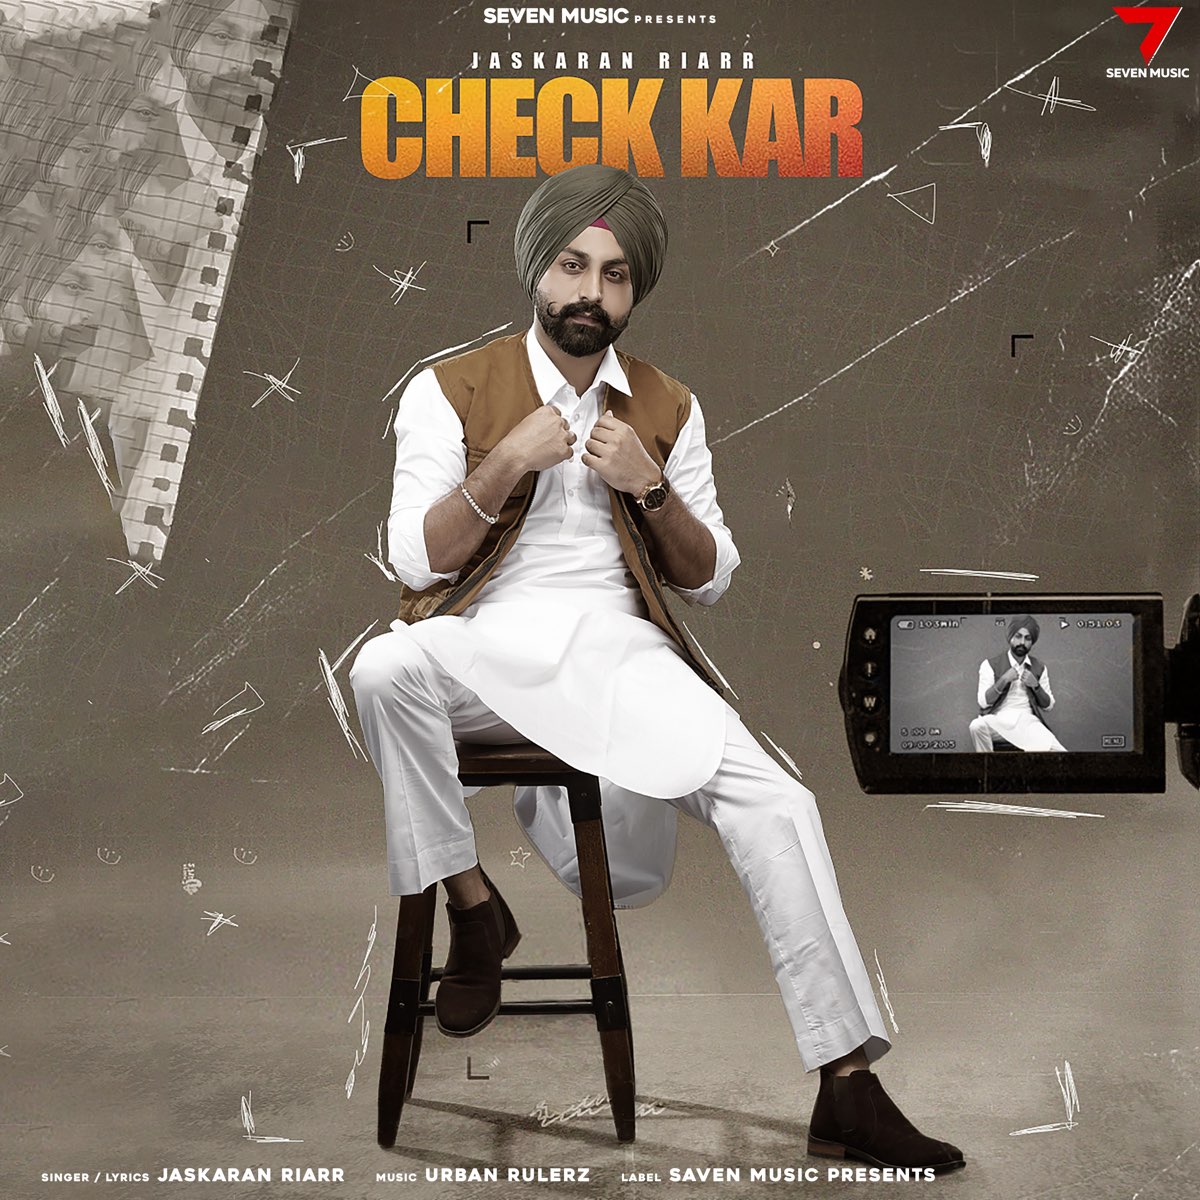 Check Kar - Single – Album par Jaskaran Riarr – Apple Music